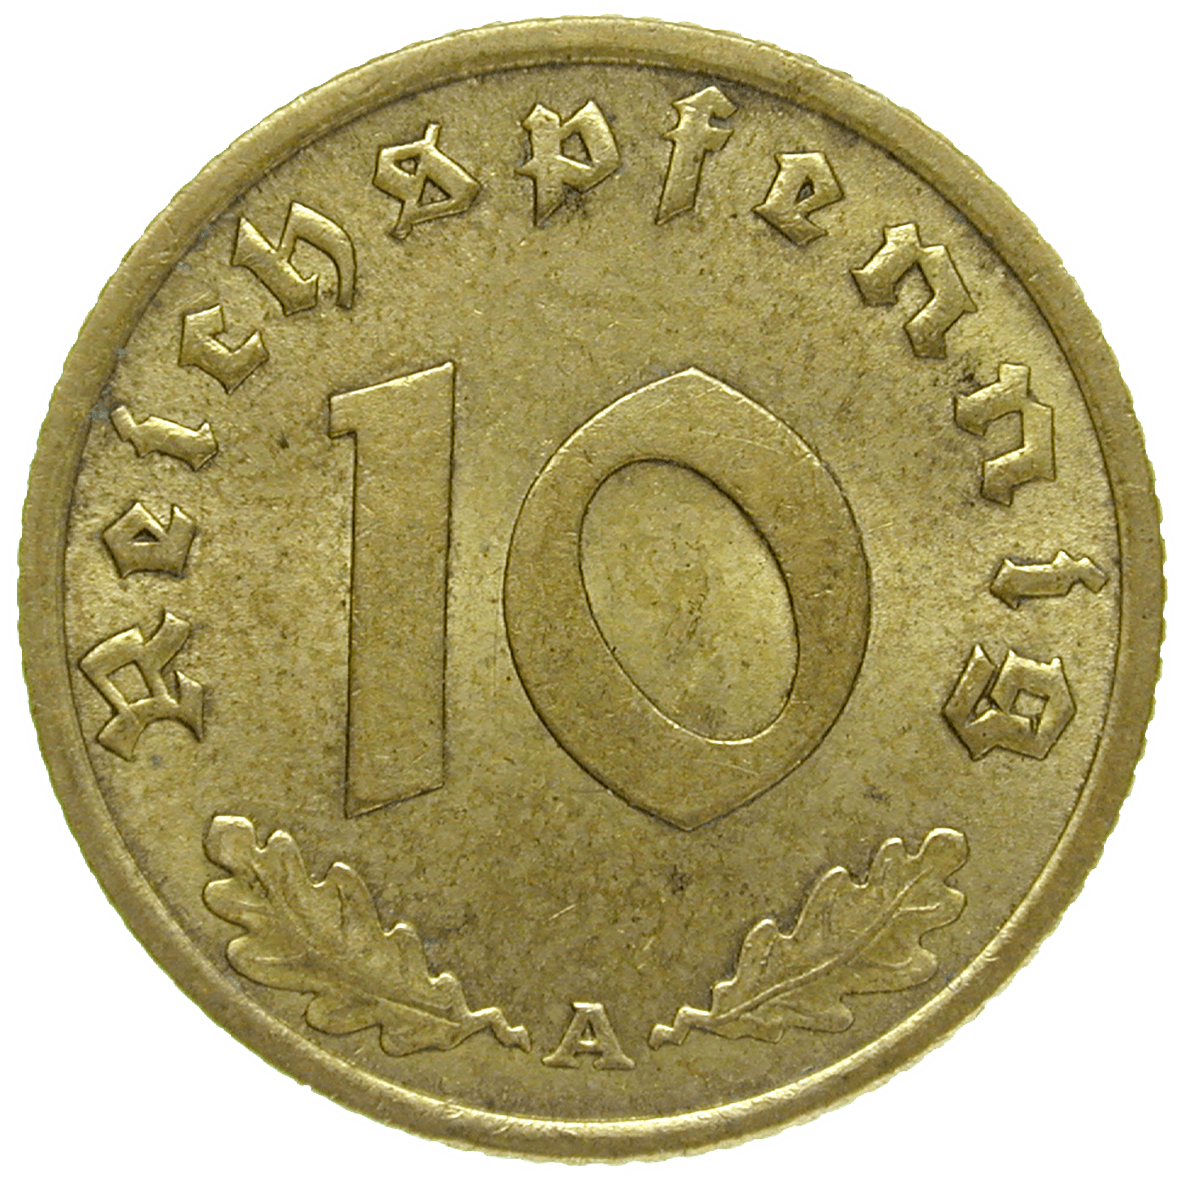 German Third Reich, 10 Reichspfennig 1936 (reverse)